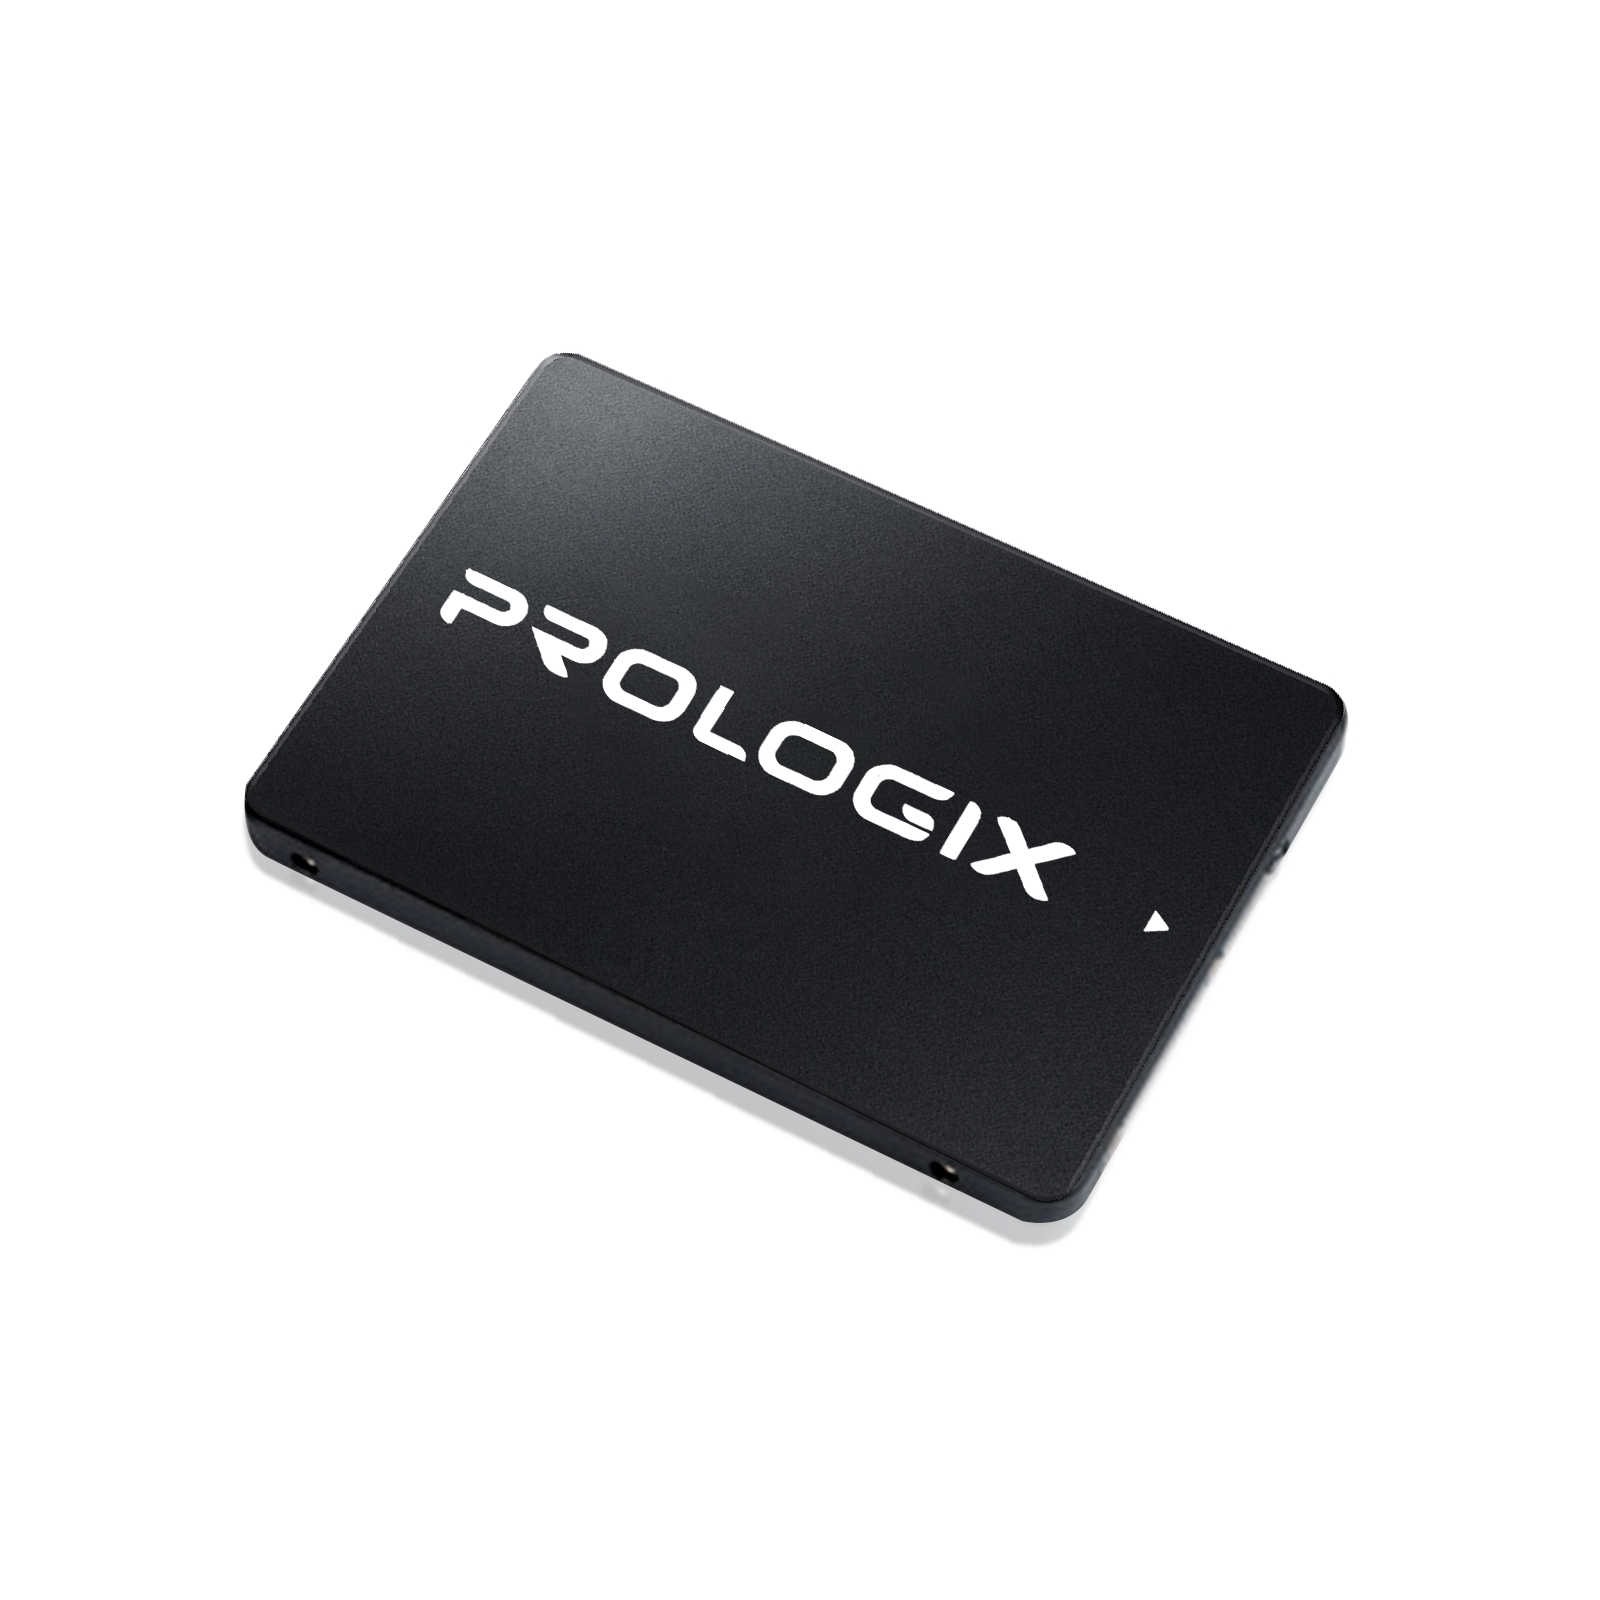 Накопитель SSD 2.5" 120GB Prologix (PRO120GS320) изображение 2